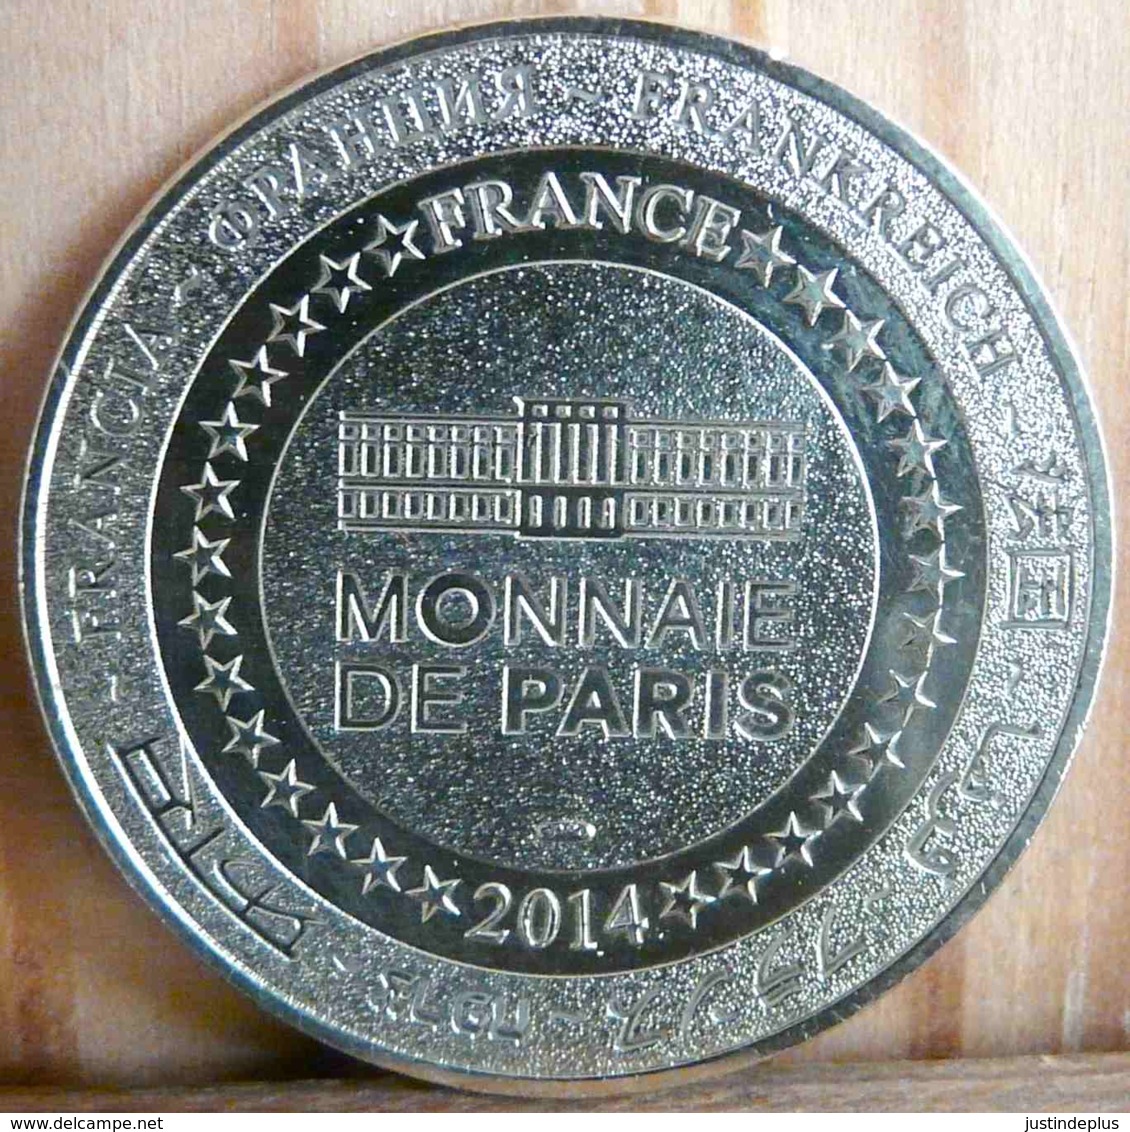 BATEAUX PARISIENS BATEAUX MOUCHES PARIS 2014 MONNAIE DE PARIS JETON TOURISTIQUE - 2014